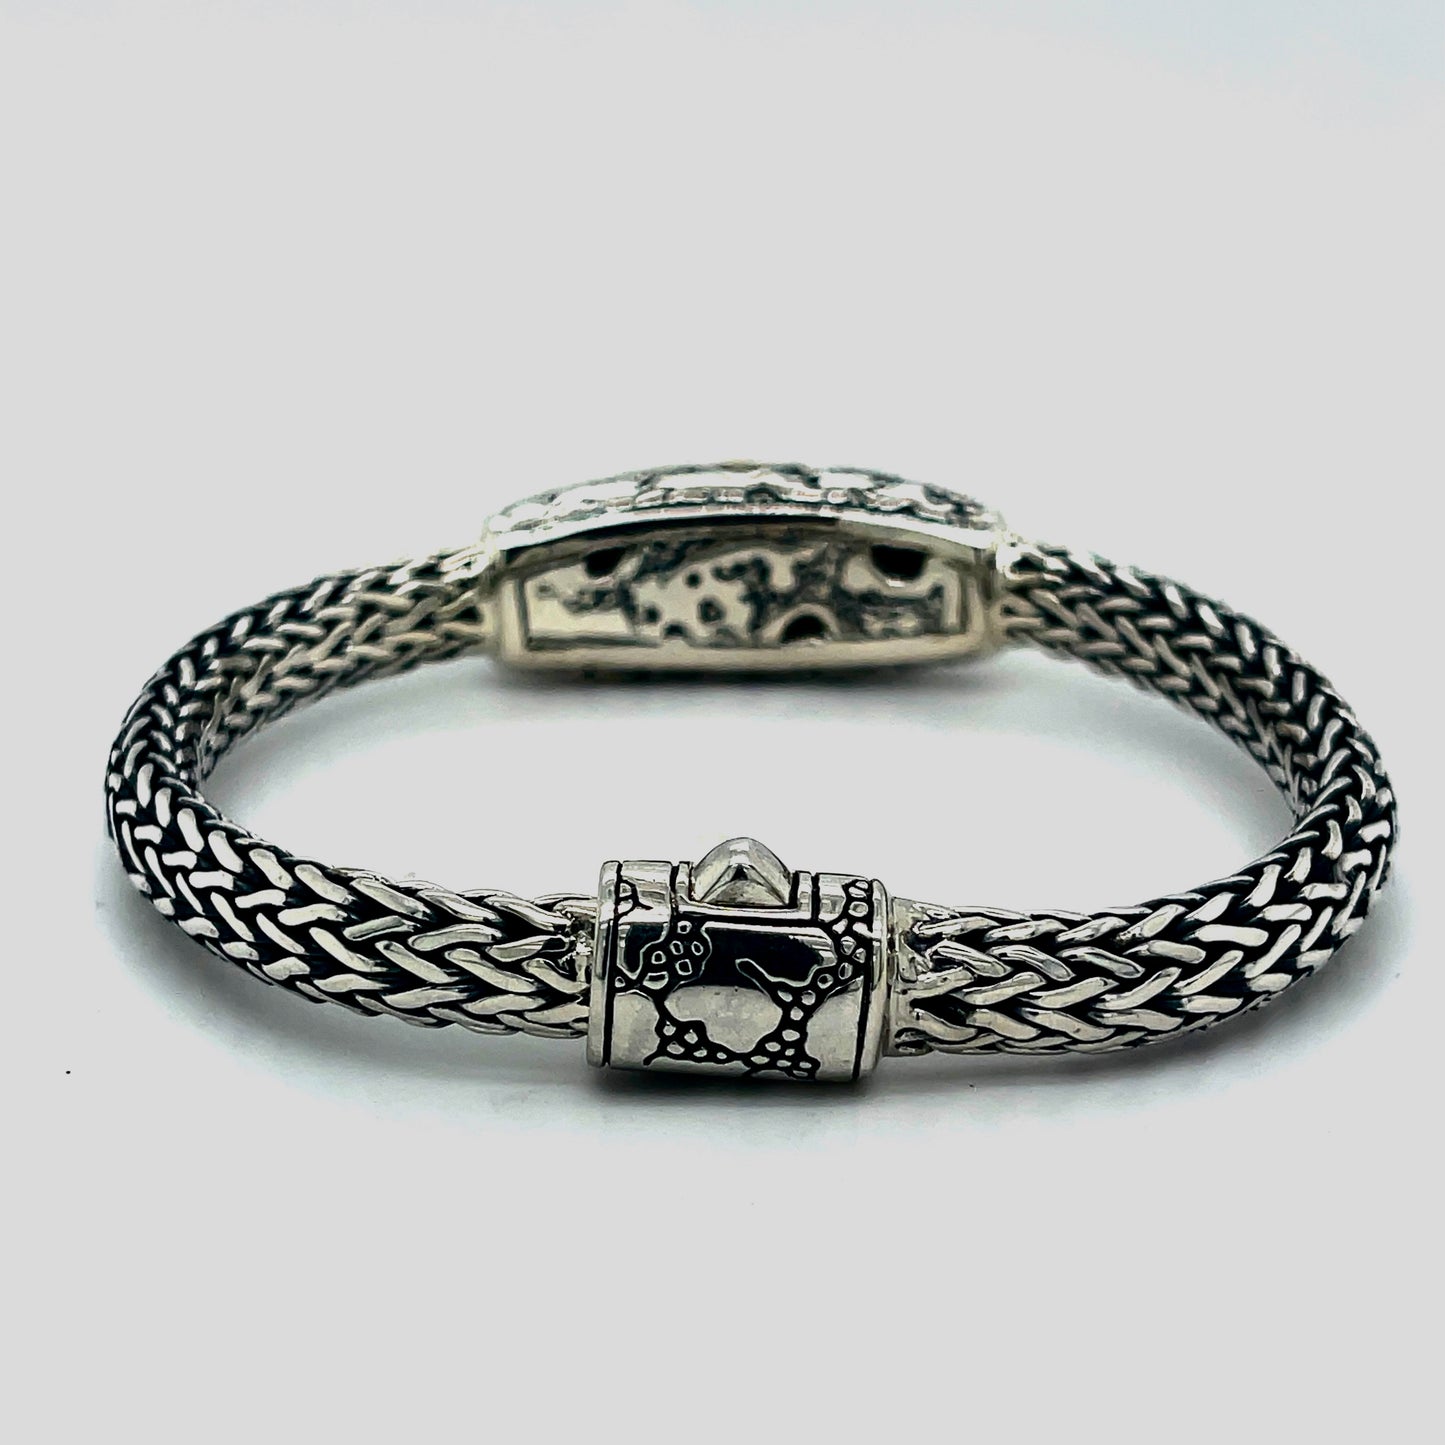 Silver gold link bracelet